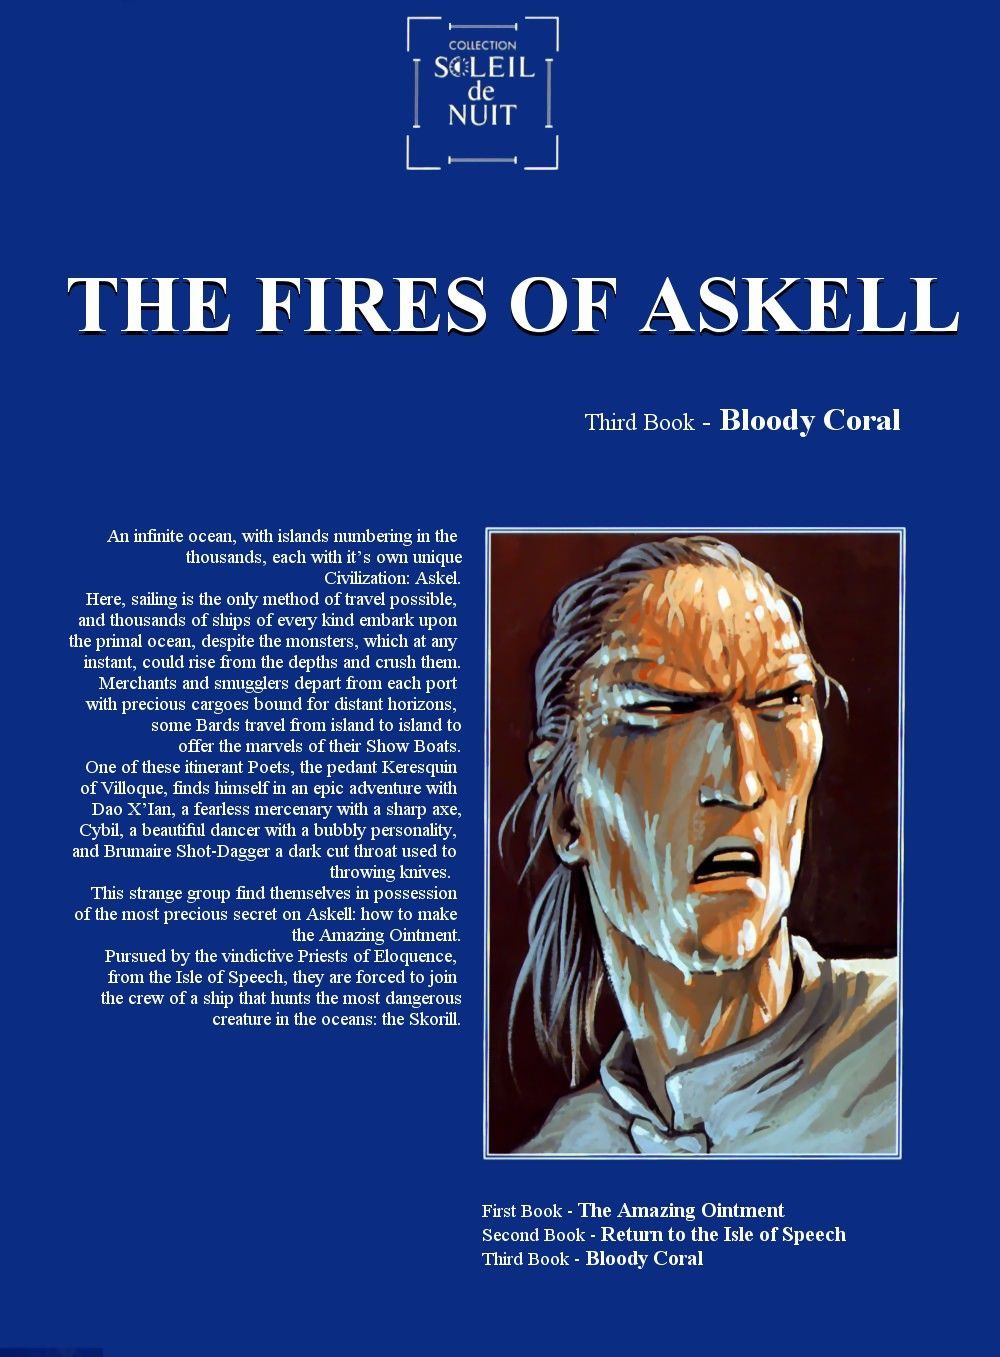 Arleston мурье w Pożary z Askell #3: krwawy koral {jj} część 3